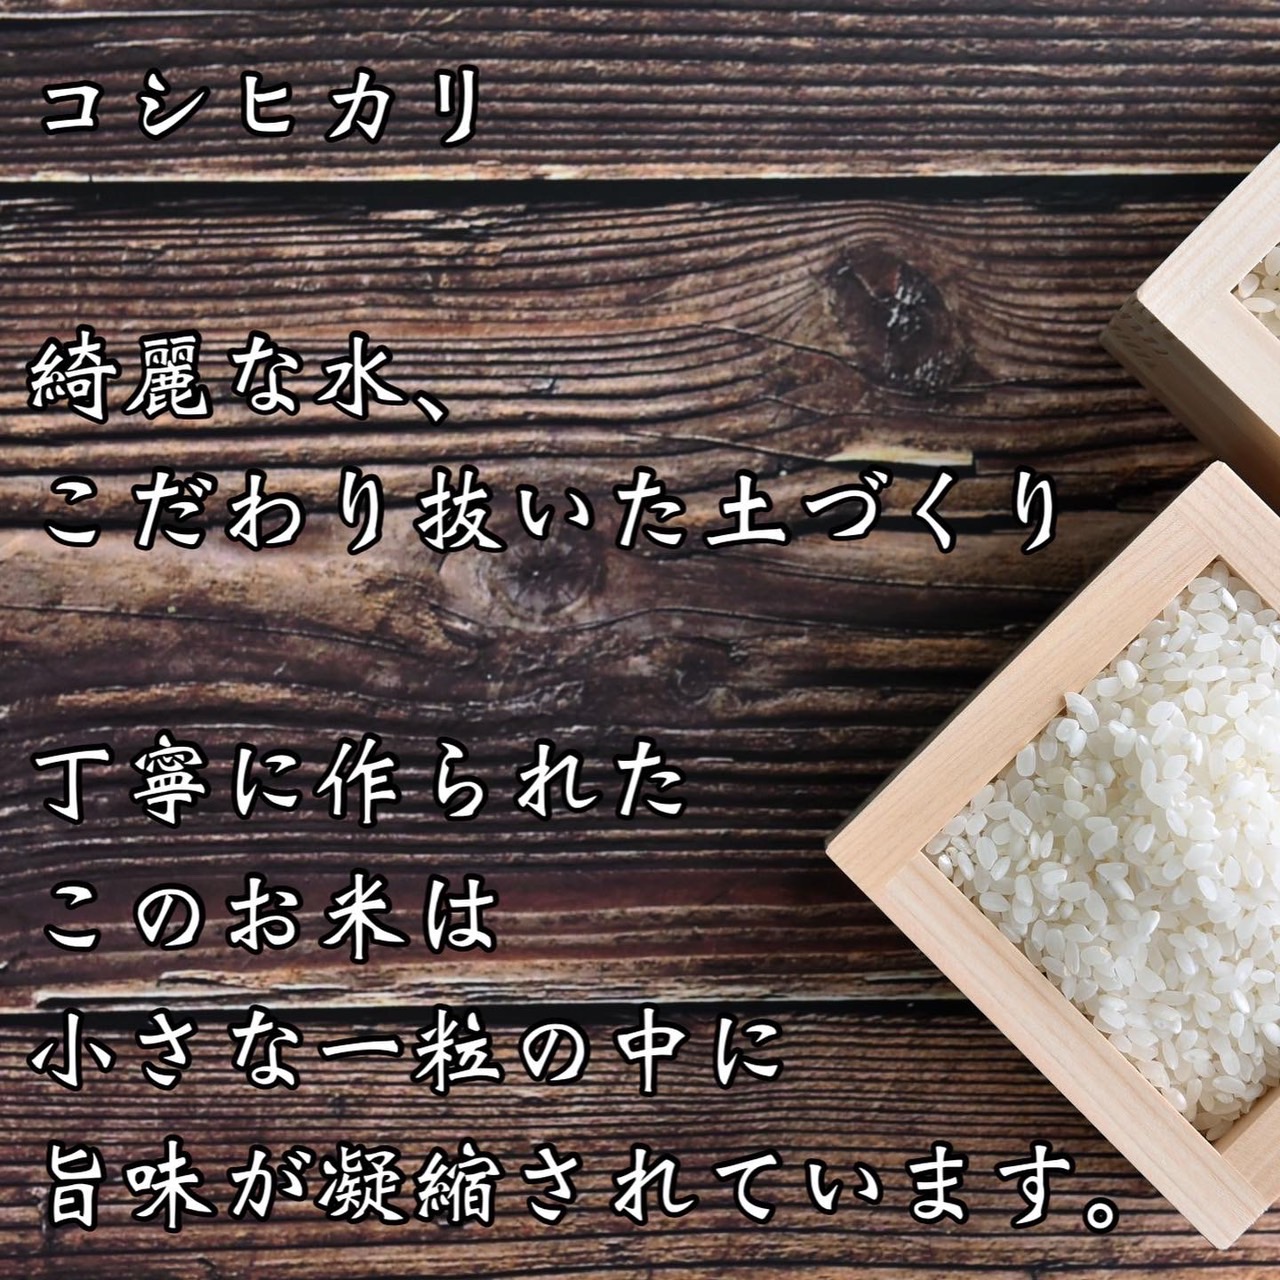 ことよりモール / 【無洗米】30kg 京都産 精米 コシヒカリ 流通してい